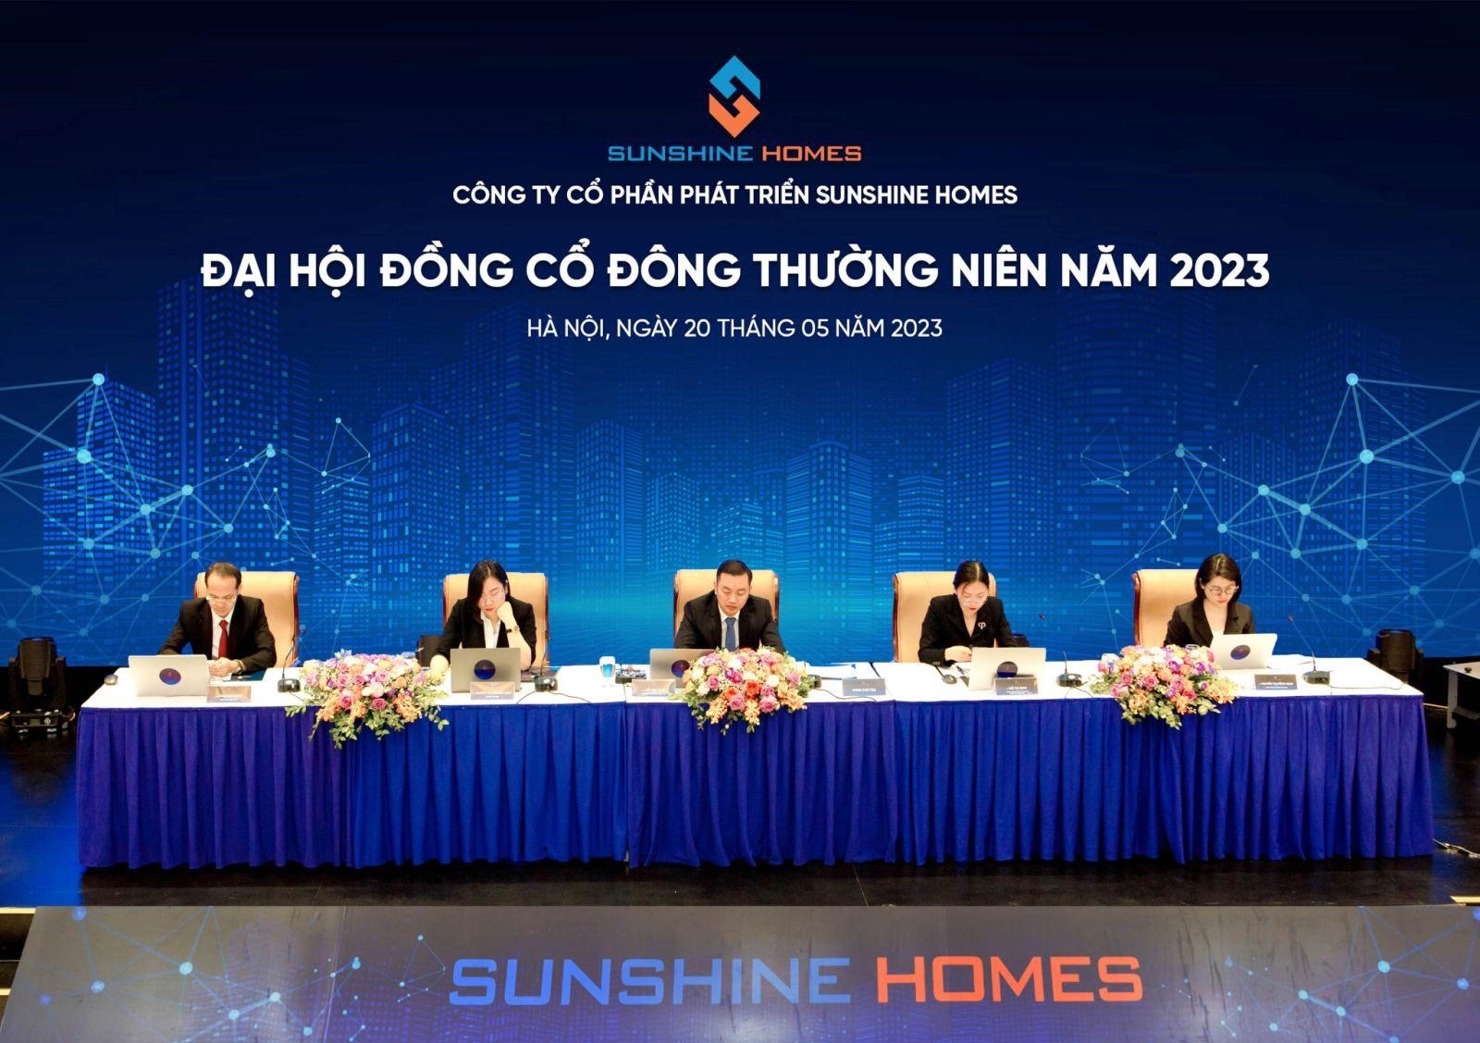 Đoàn Chủ tọa điều hành Đại hội cổ đông thường niên 2023 Sunshine Homes. Ảnh: Sunshine